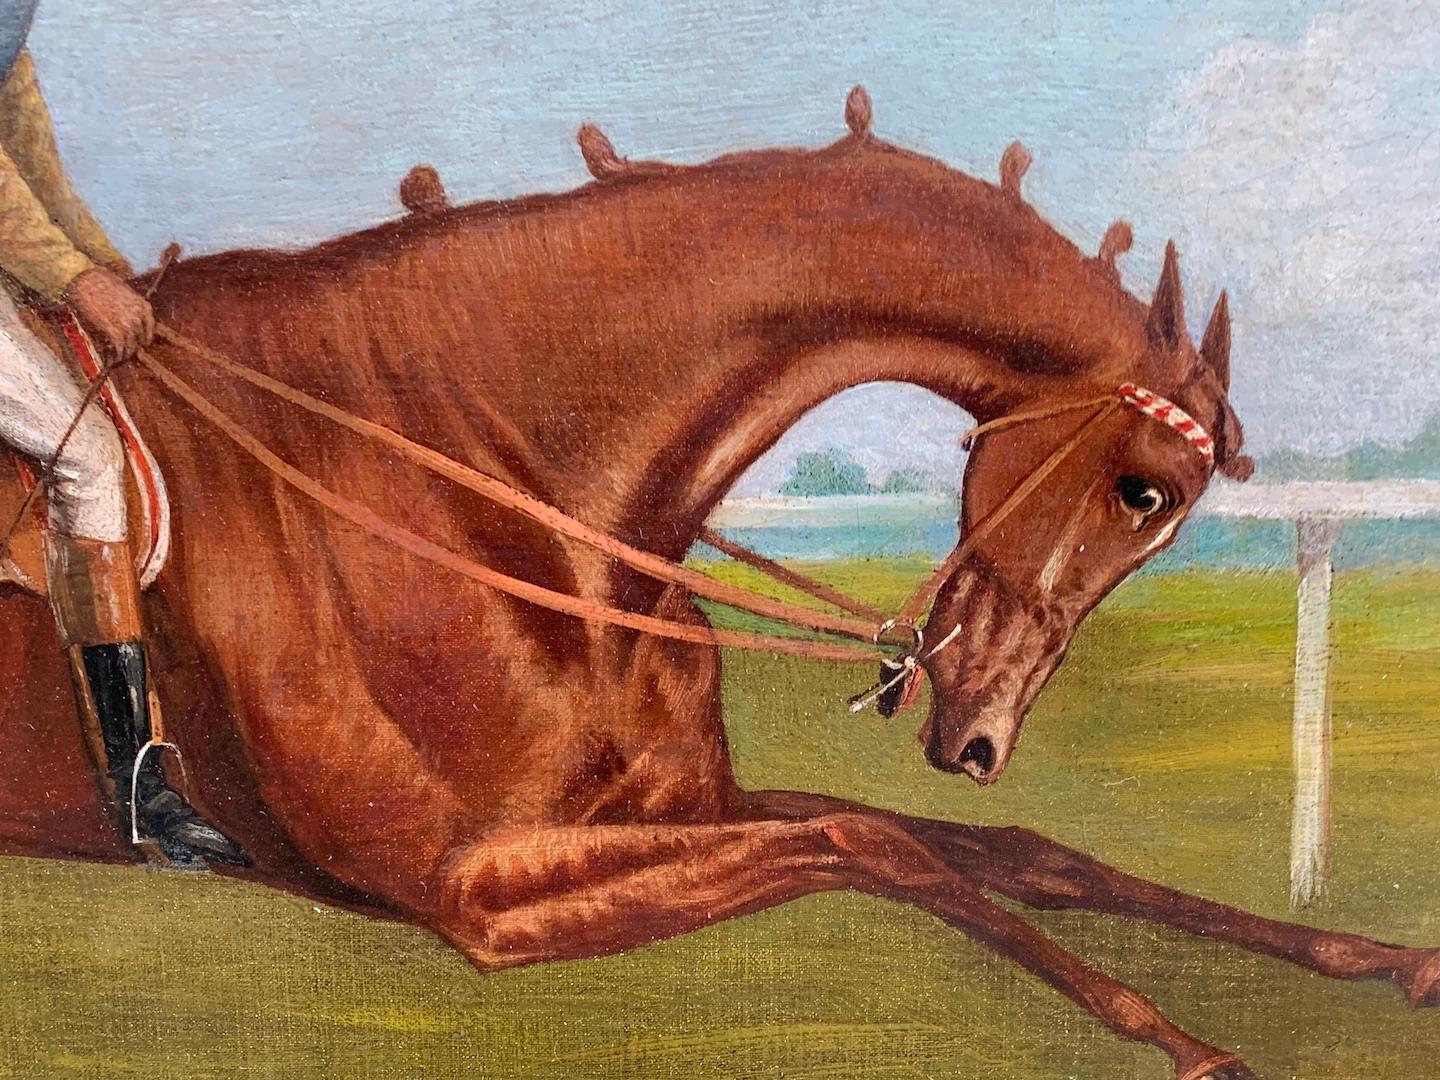  Antike englische Pferderennenszene aus dem 19. Jahrhundert in einer Landschaft mit Jockey up (Grau), Animal Painting, von John Frederick Herring Sr.